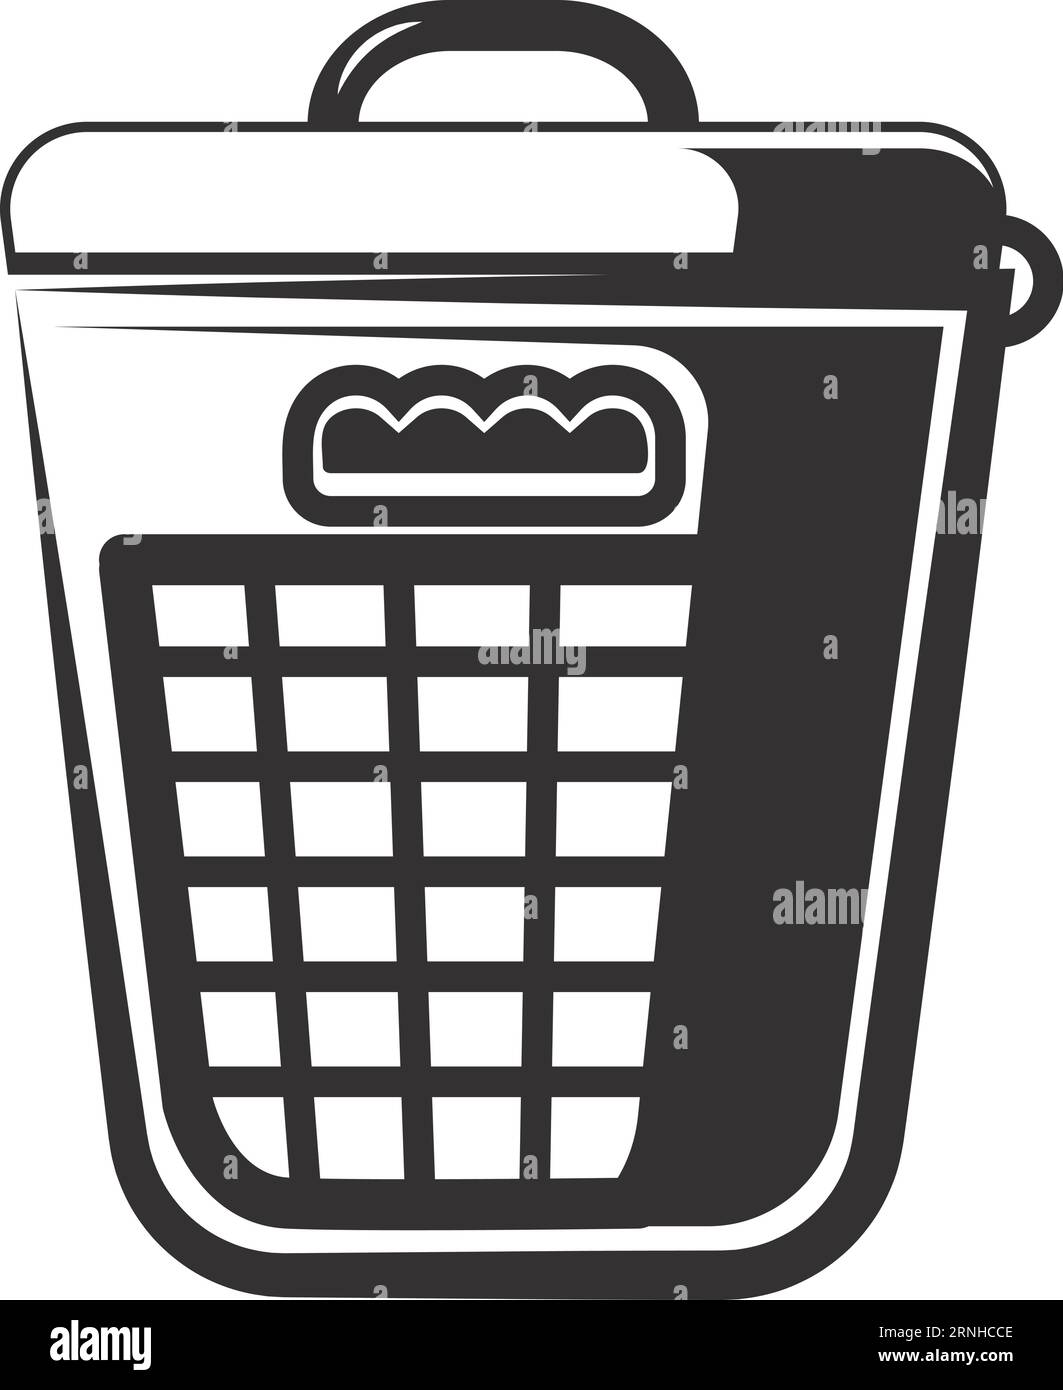  Telas domésticas, cestas de ropa sucia, cestas de lavandería,  cestas de almacenamiento para ropa sucia, cubos de almacenamiento, cestas  de lavandería Cuadrado negro : Hogar y Cocina